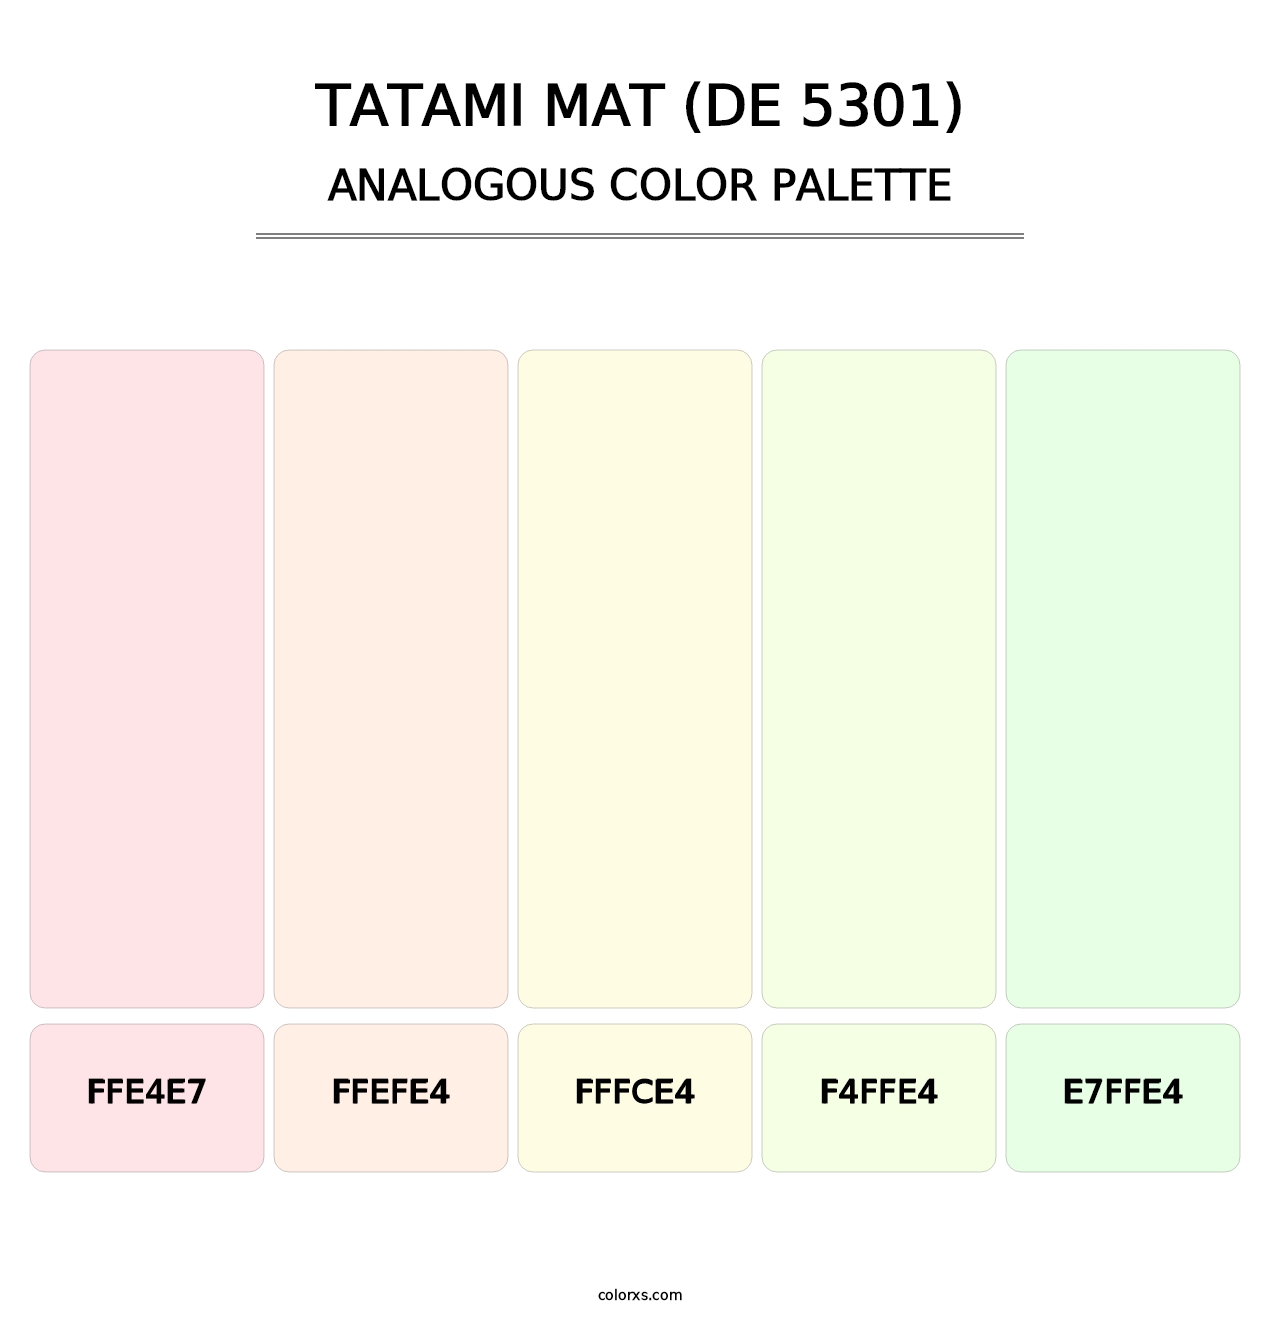 Tatami Mat (DE 5301) - Analogous Color Palette